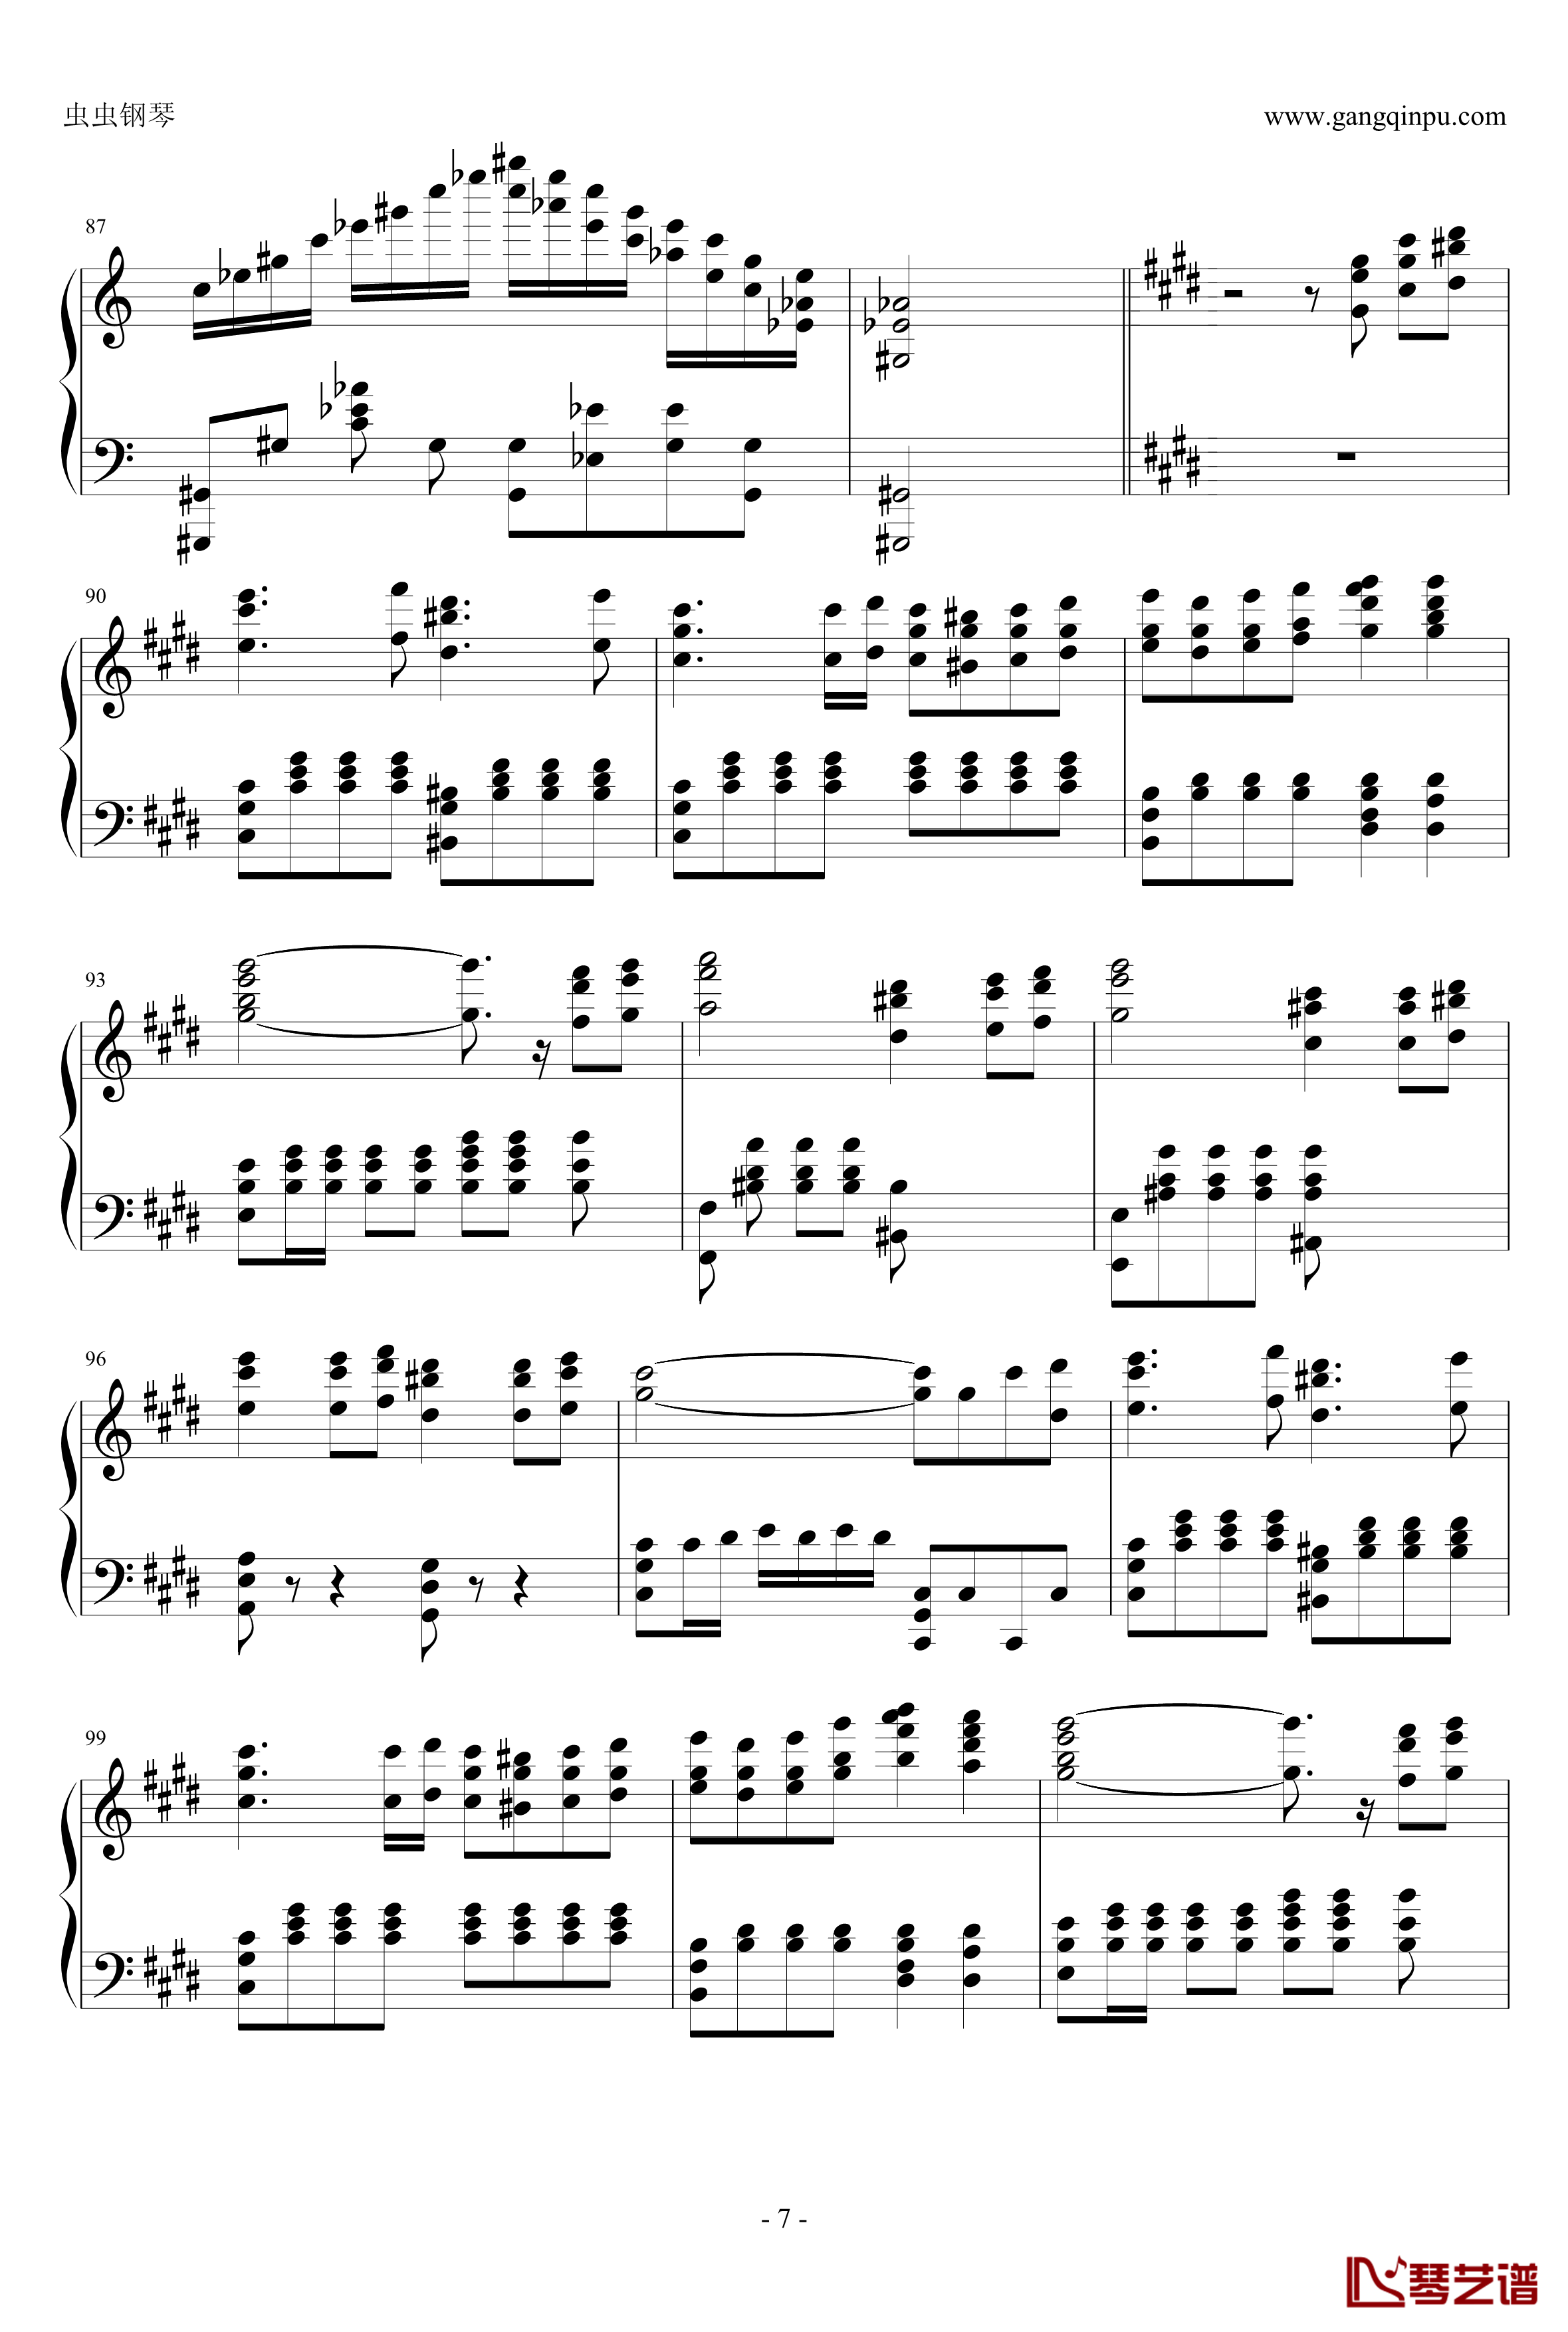 贝多芬V3奏鸣曲钢琴谱-劲舞团改编-劲舞团7